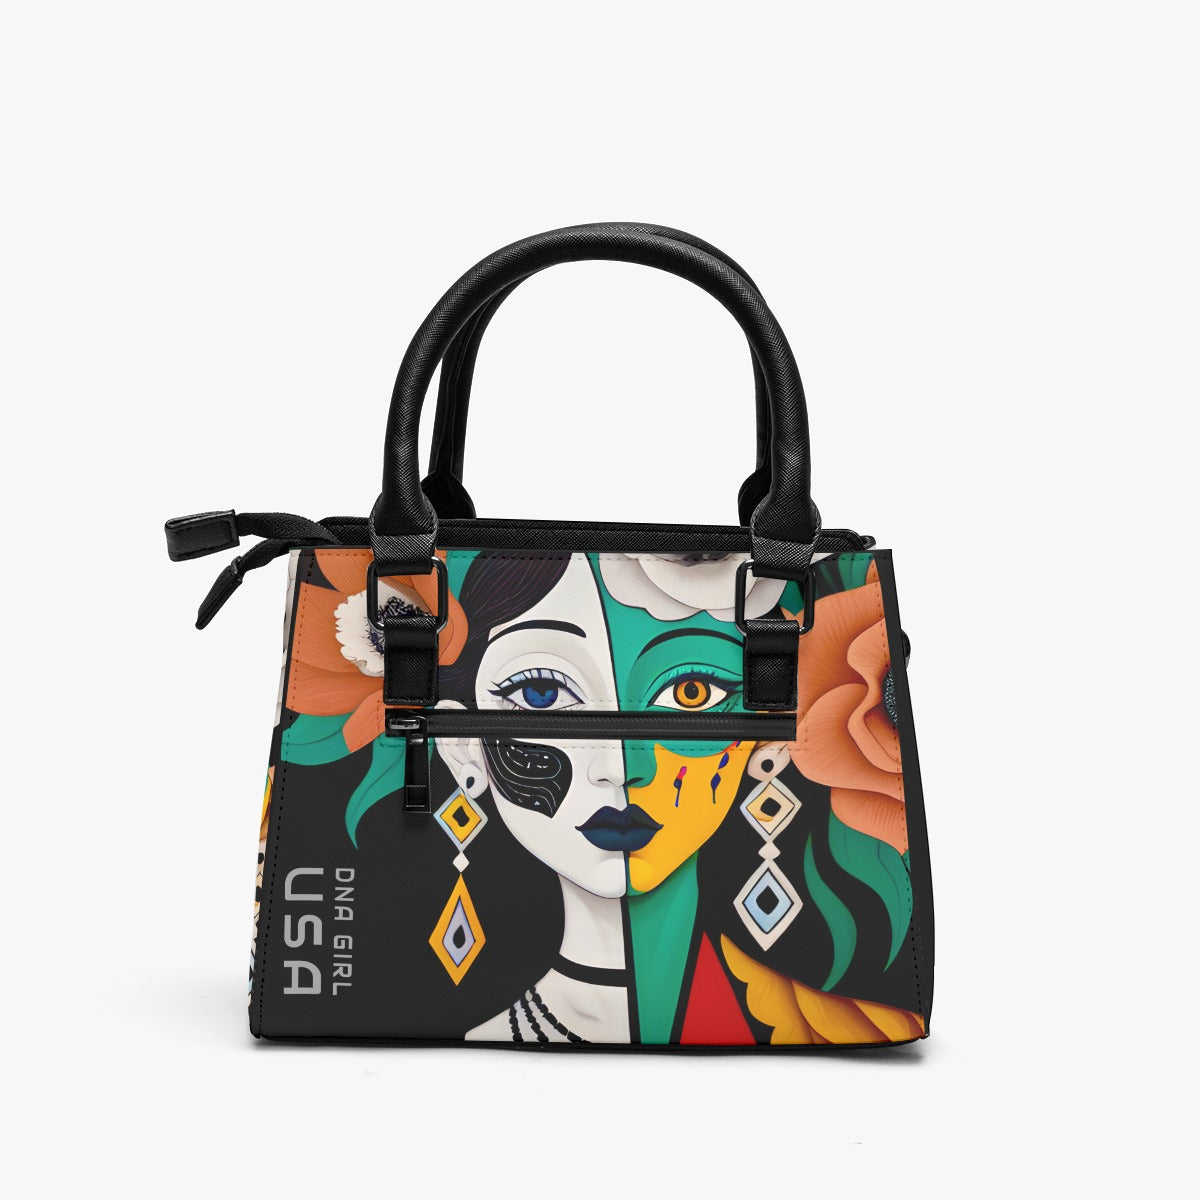 DNA GIRL (USA) Multifunctional Handbag